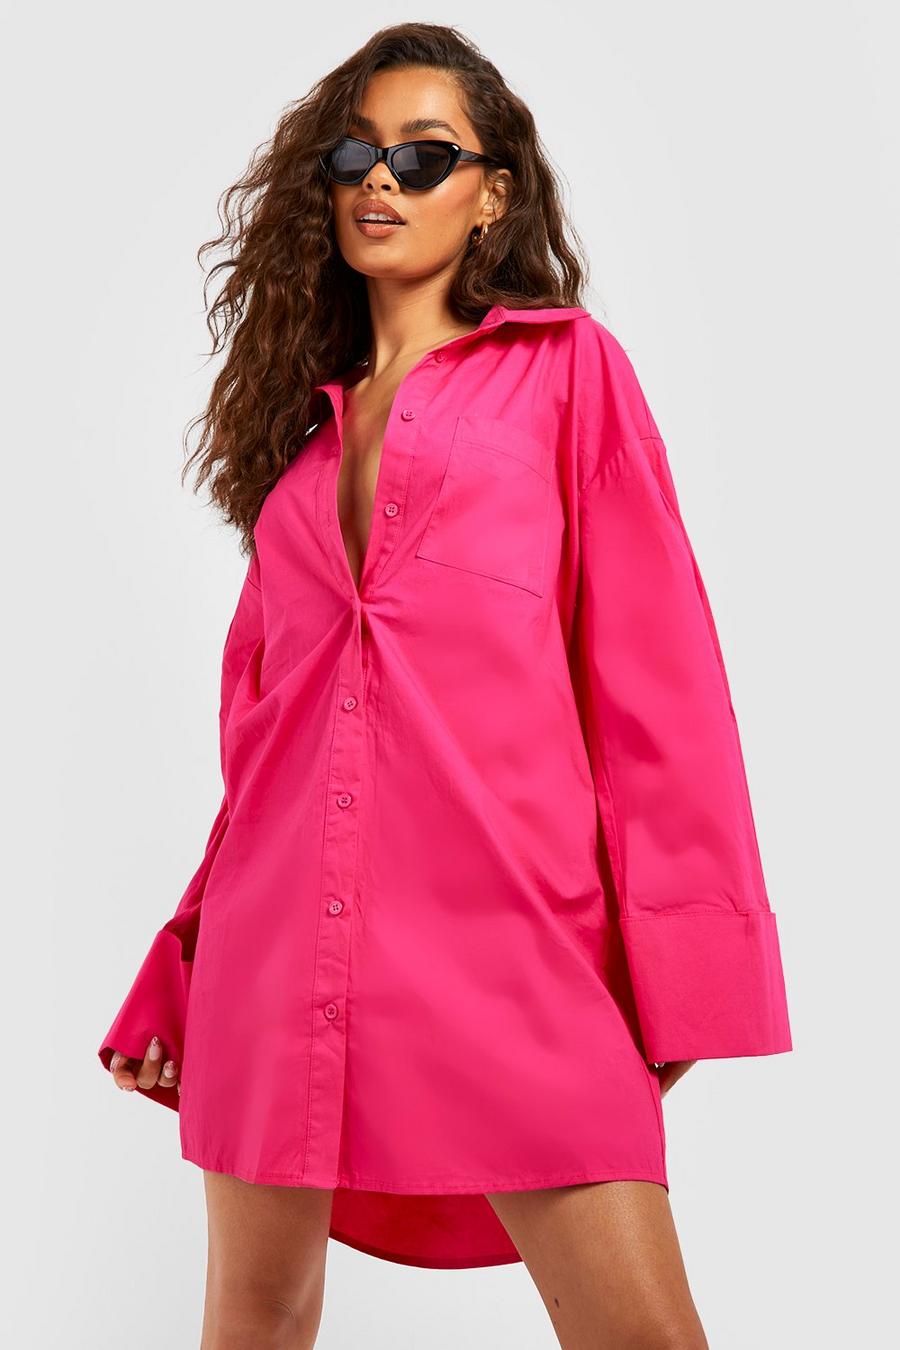 Oversize Hemd-Kleid mit Puffärmeln, Hot pink